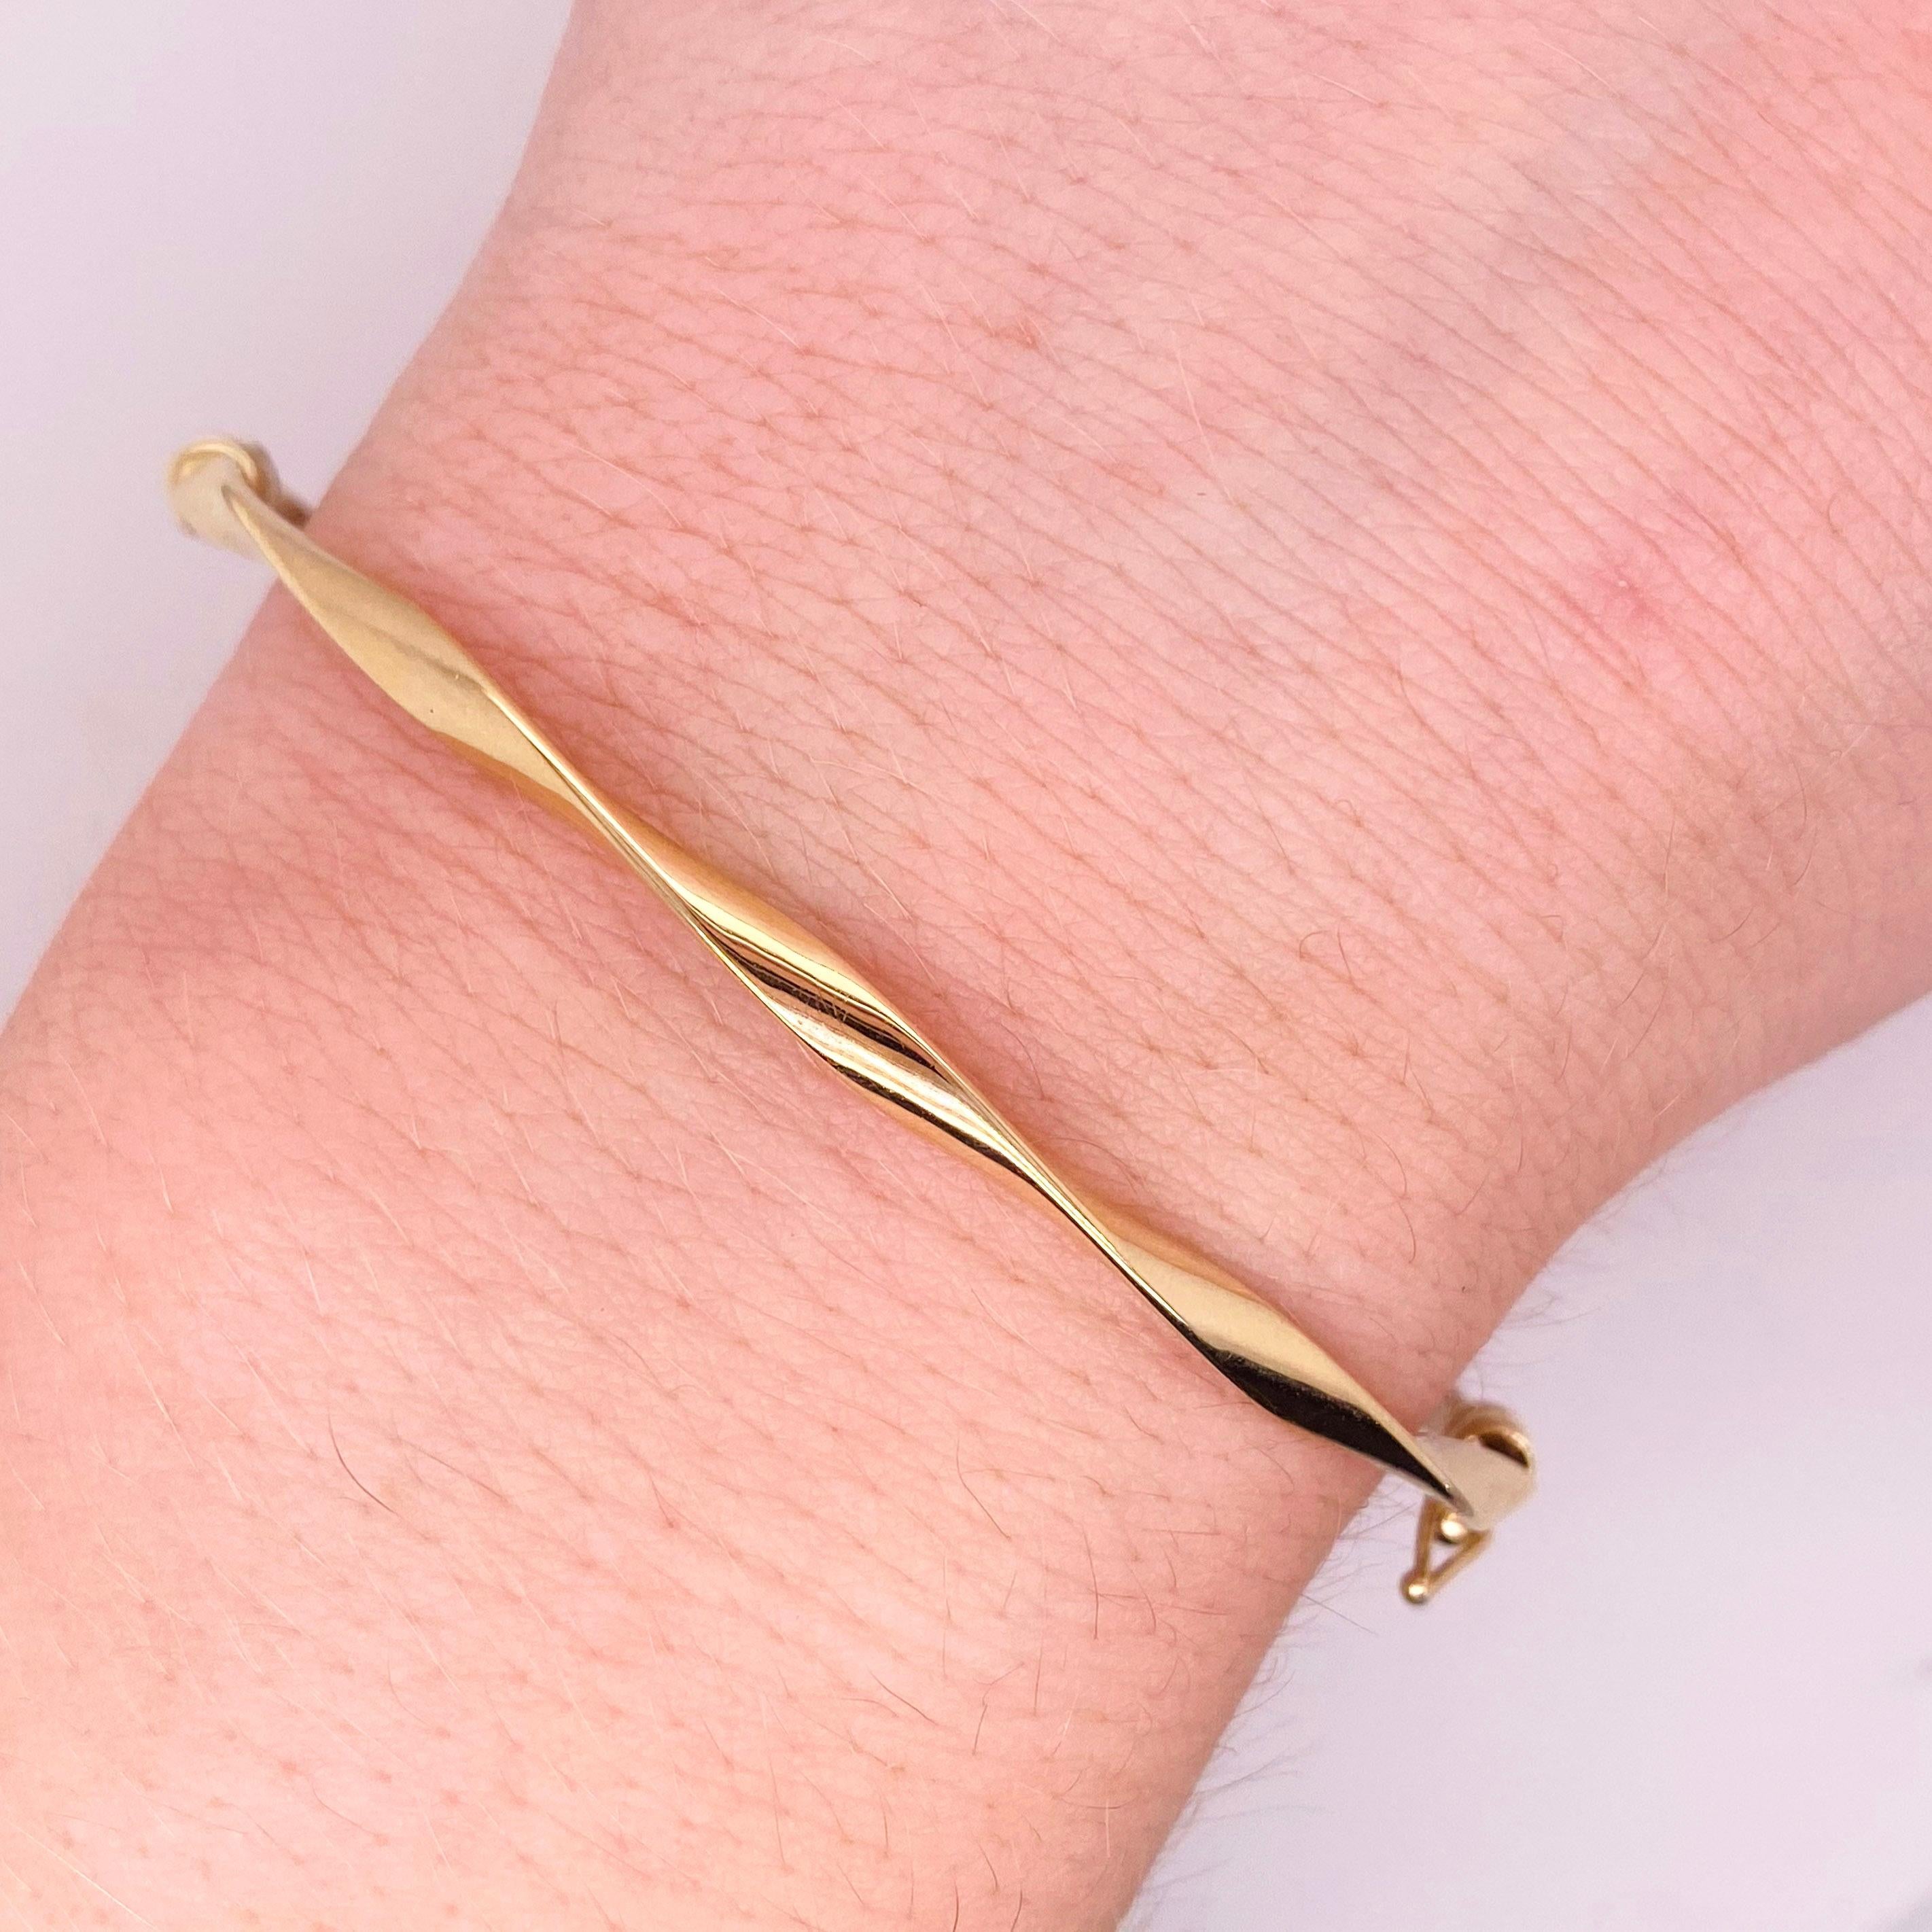 Le bracelet bangle torsadé est incroyable ! Vous trouverez ci-dessous les détails de ce magnifique bracelet :
Type de bracelet : Bracelet avec fermeture de sécurité
Qualité du métal : Or jaune 14 carats
Circonférence : 7.5 pouces
Diamètre : 2.25 x